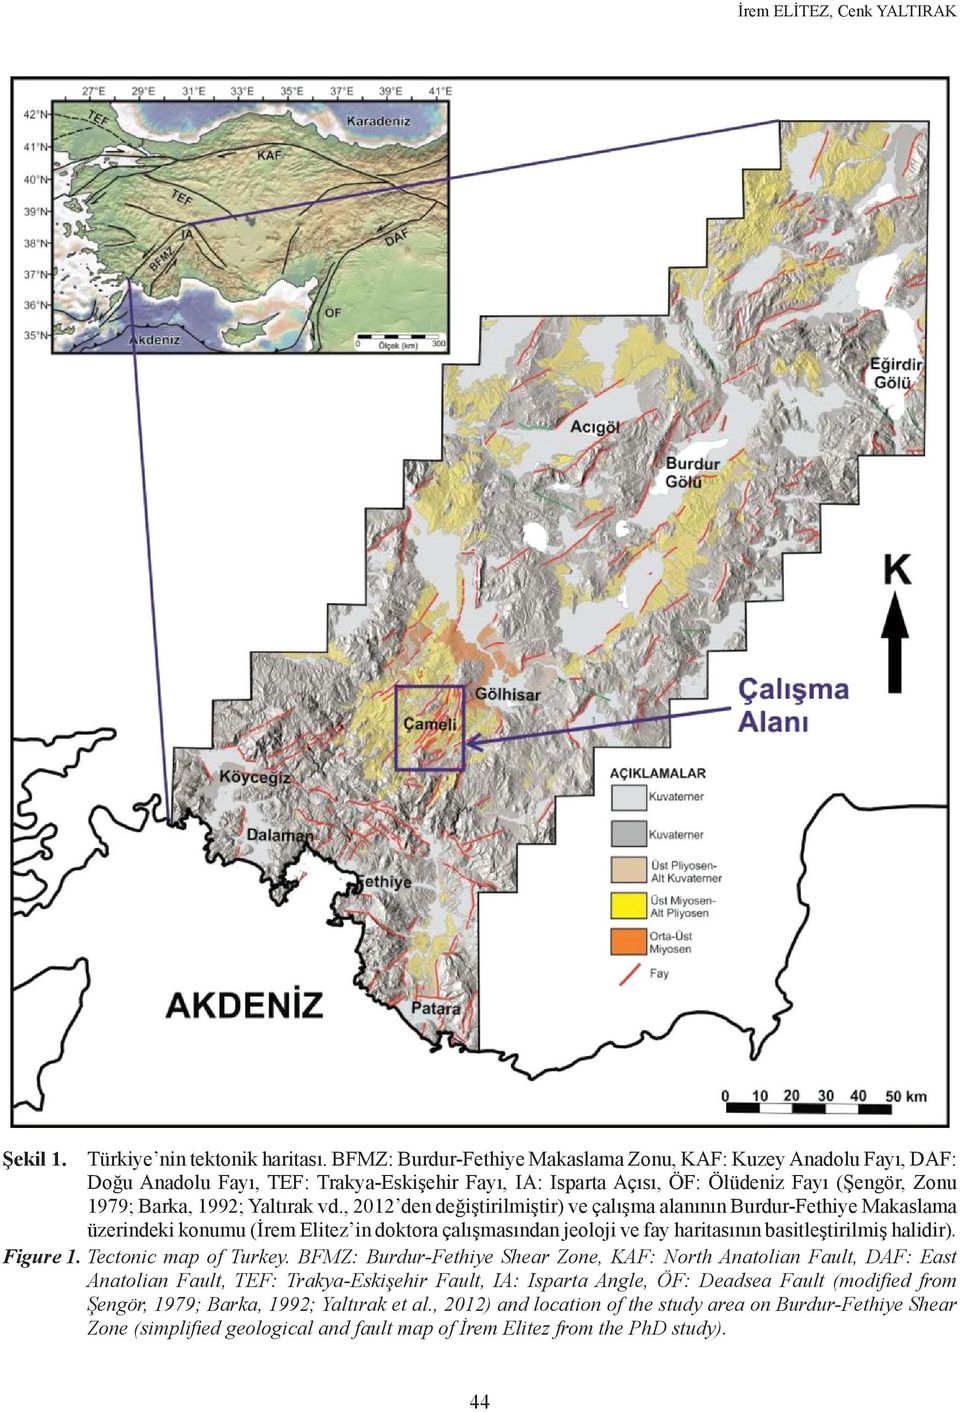 , 2012 den değiştirilmiştir) ve çalışma alanının Burdur-Fethiye Makaslama üzerindeki konumu (İrem Elitez in doktora çalışmasından jeoloji ve fay haritasının basitleştirilmiş halidir). Figure 1.